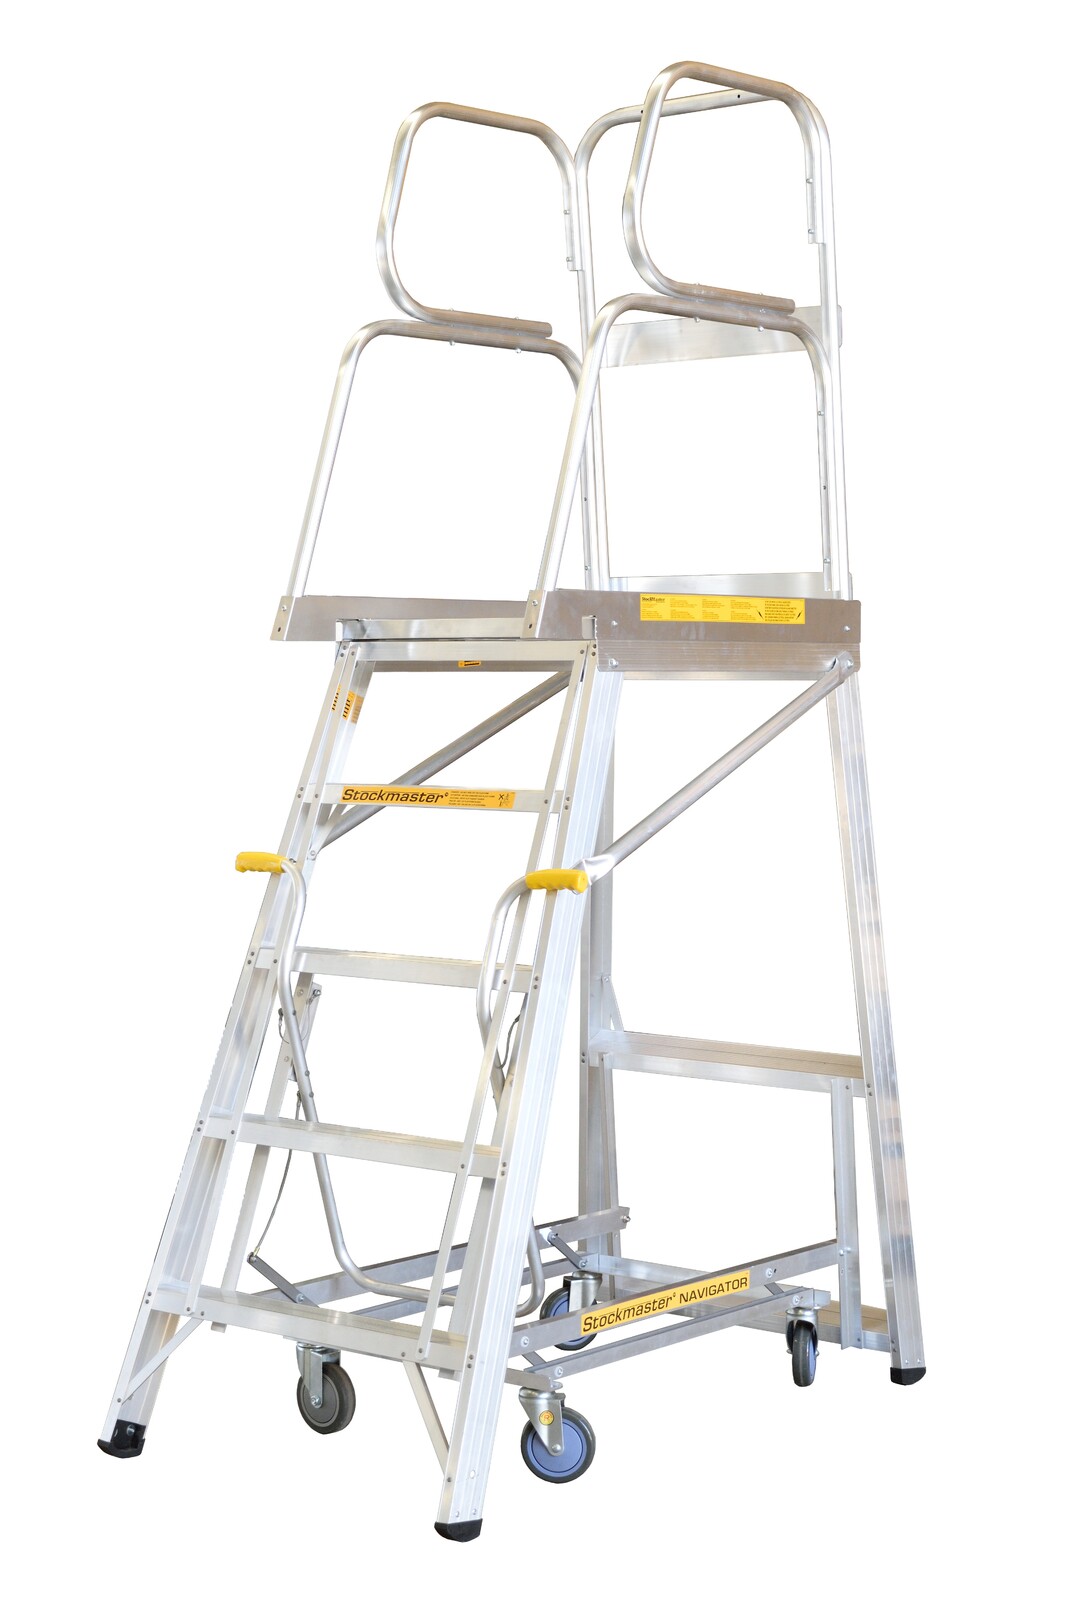 Stockmaster 150kg Rated Mobile Work Platform Ladder Navigator - 2.3m